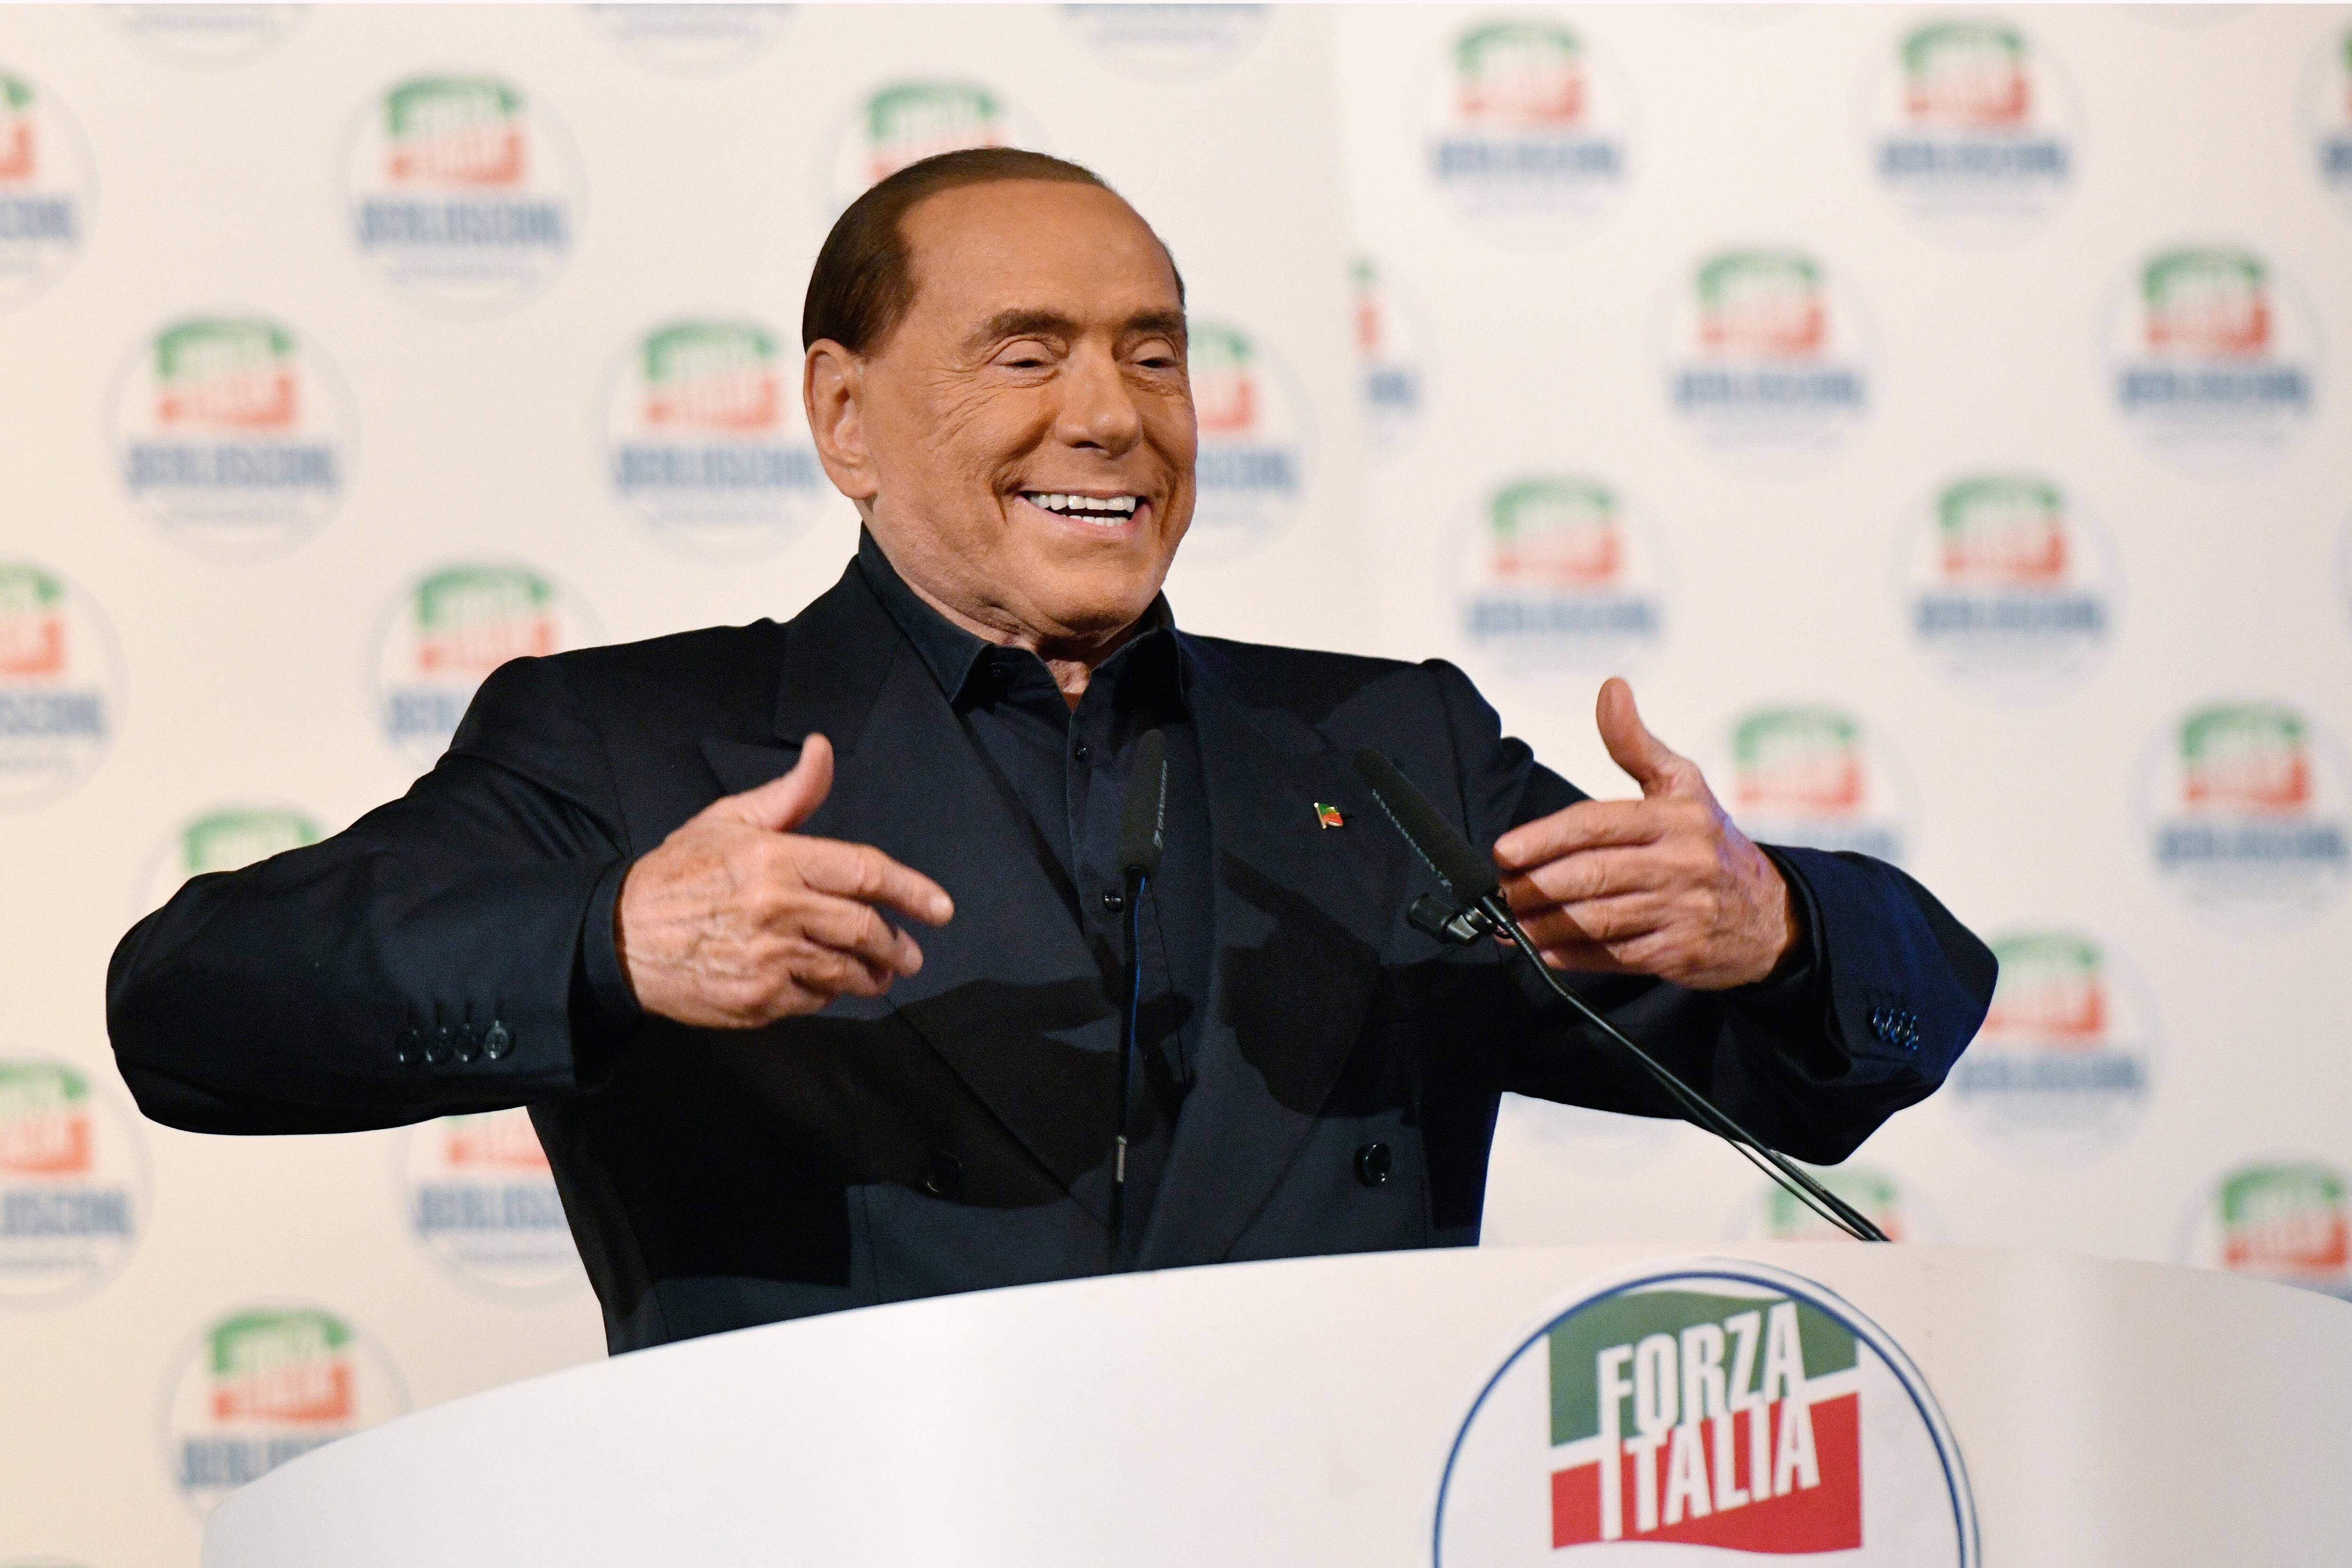 Líder del partido de extrema derecha italiano Forza Italia (Italia), Silvio Berlusconi gesticula mientras pronuncia un discurso en el escenario durante una manifestación de campaña en Milán el 25 de febrero de 2018, antes de las elecciones generales de Italia de la próxima semana.